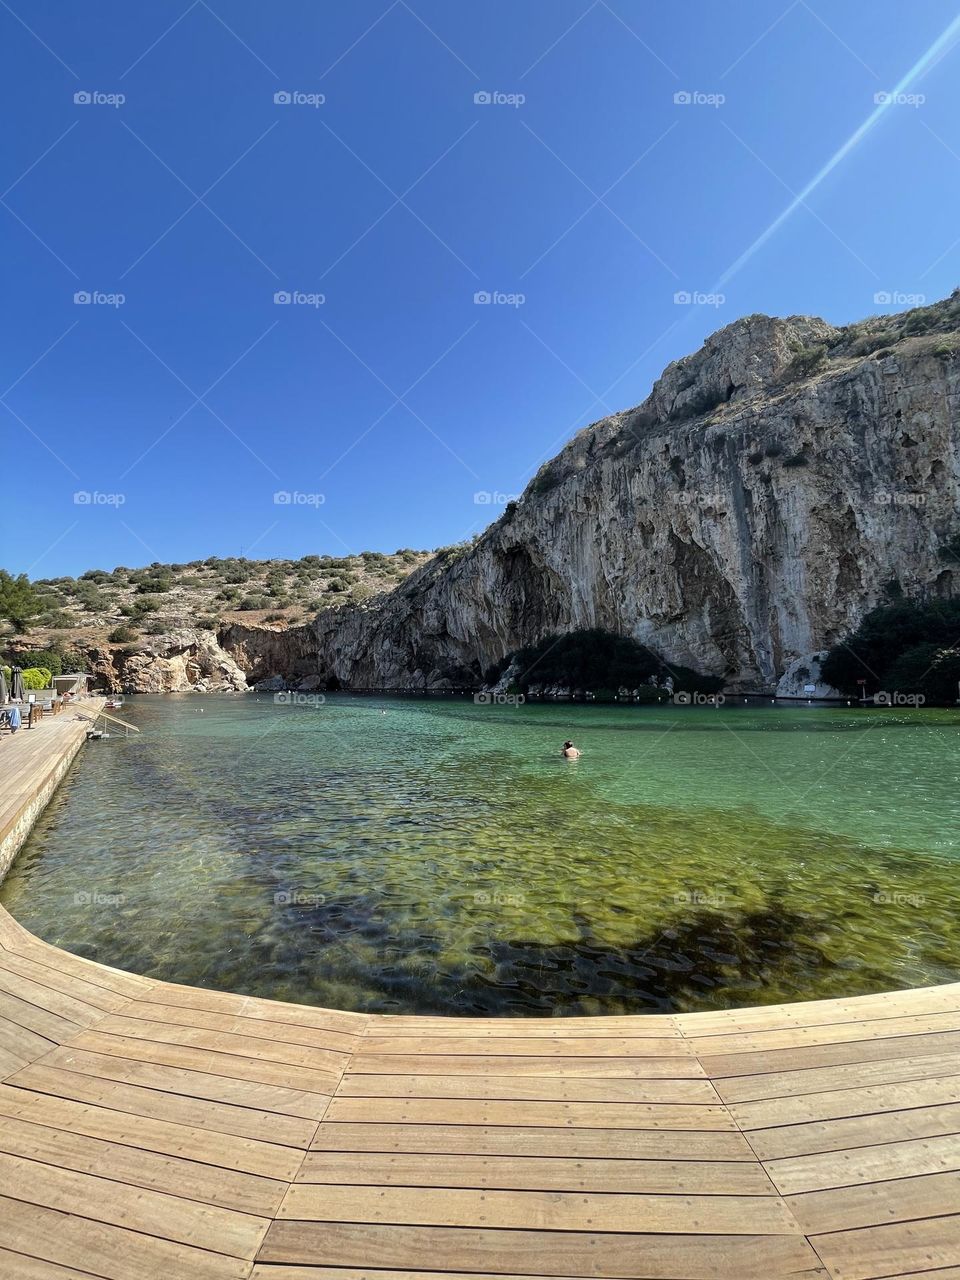 Vouliagmeni lake in greece 